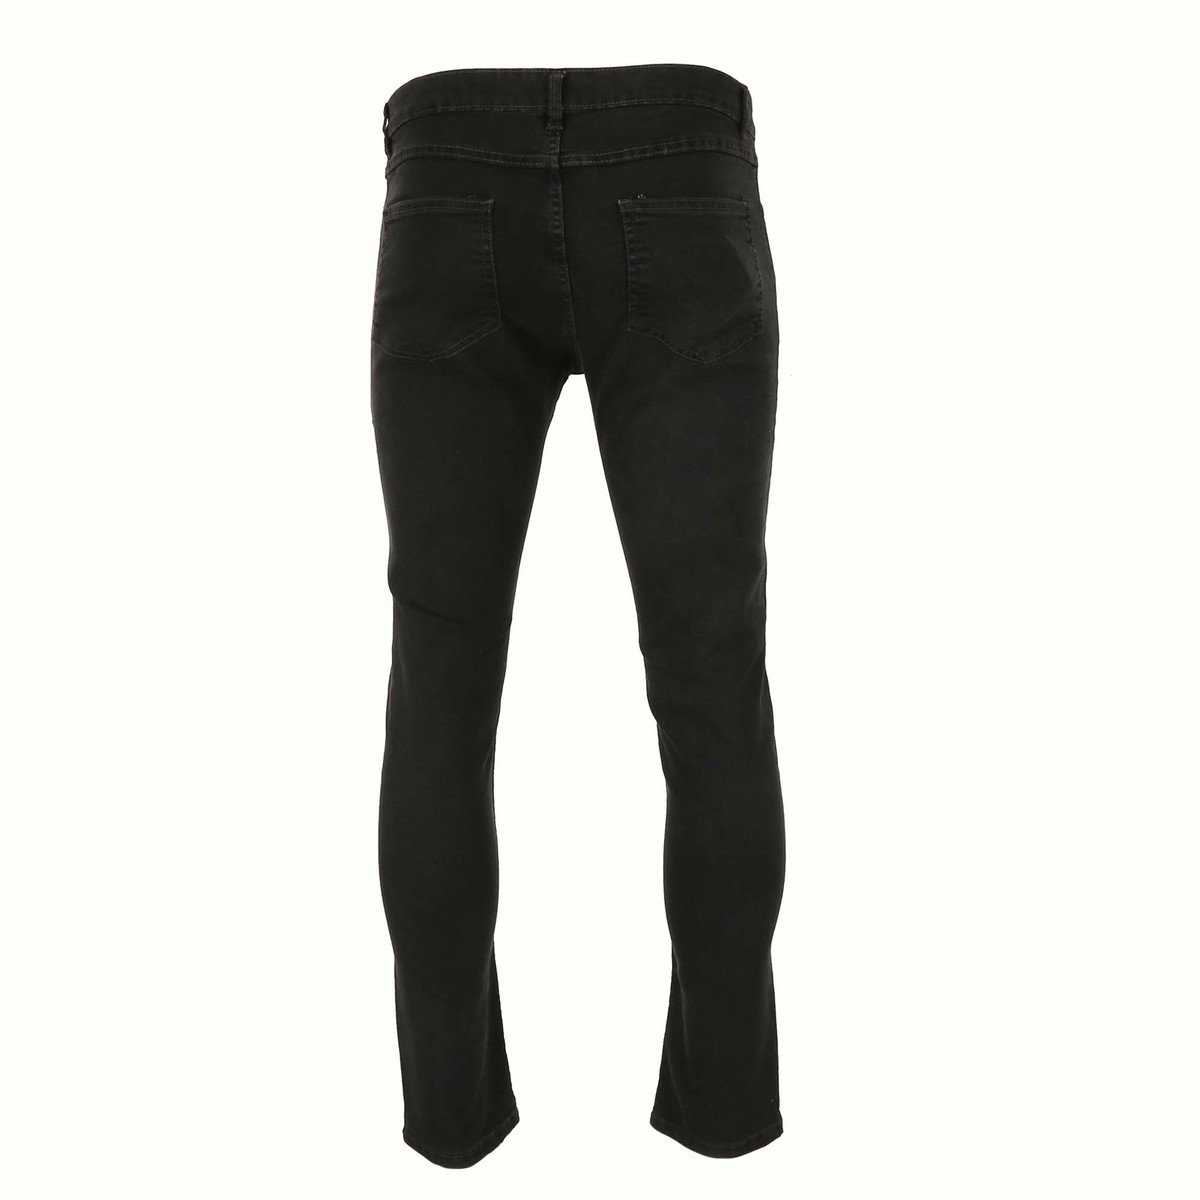 Reo Men's Denim Slim Fit Jeans BOM570C, DK.GREY 38